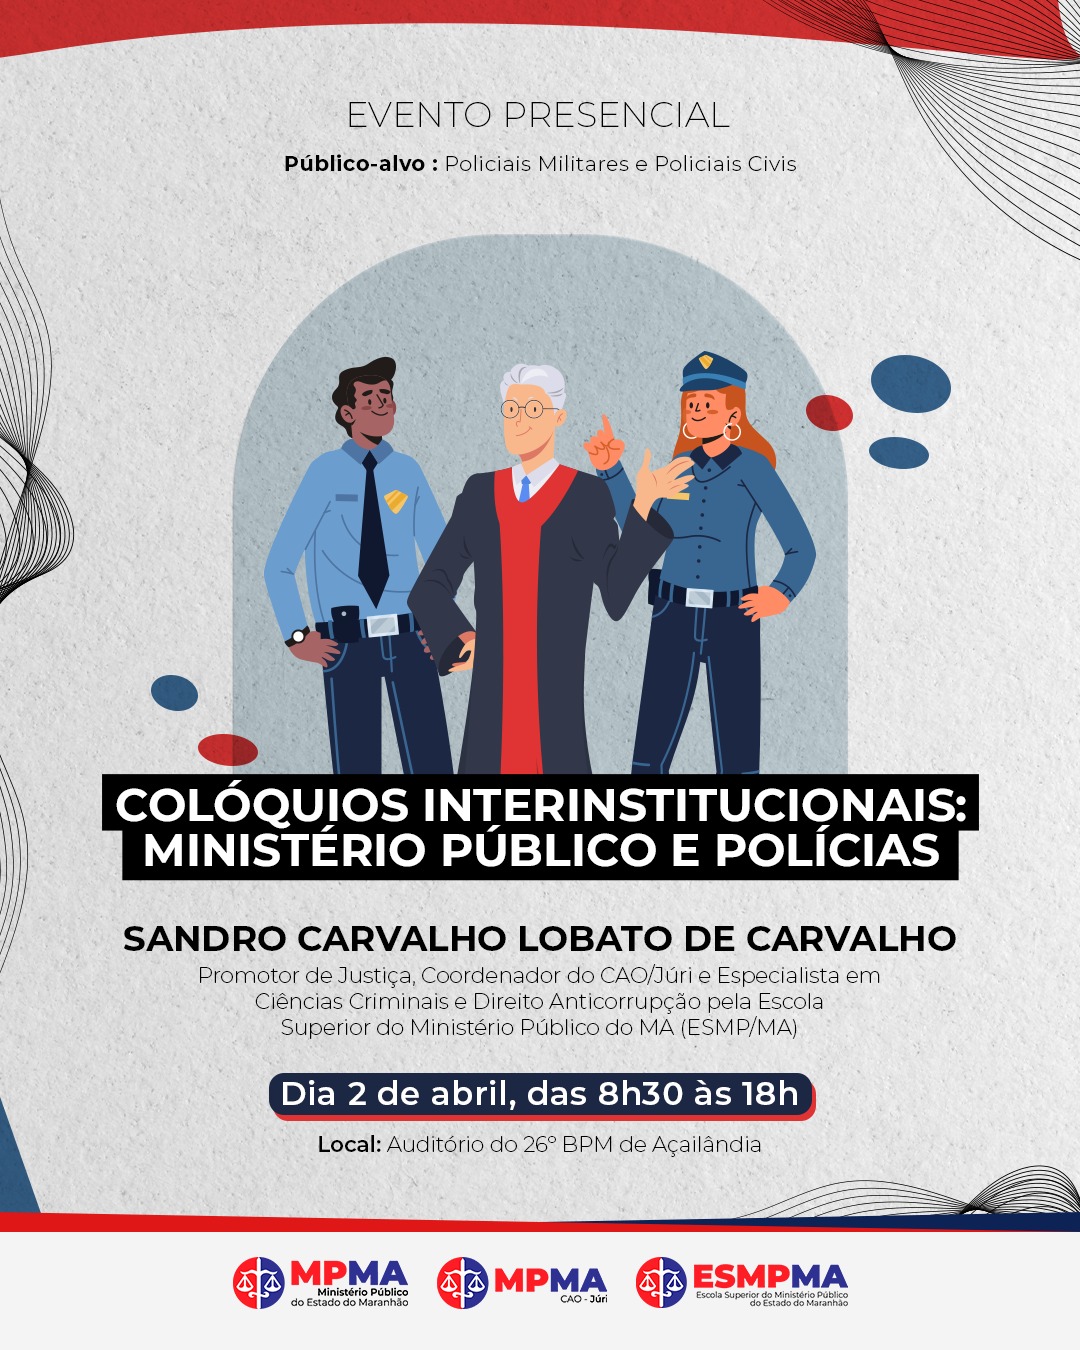 Colóquios interinstitucionais: Ministério Público e Polícias - Açailândia 